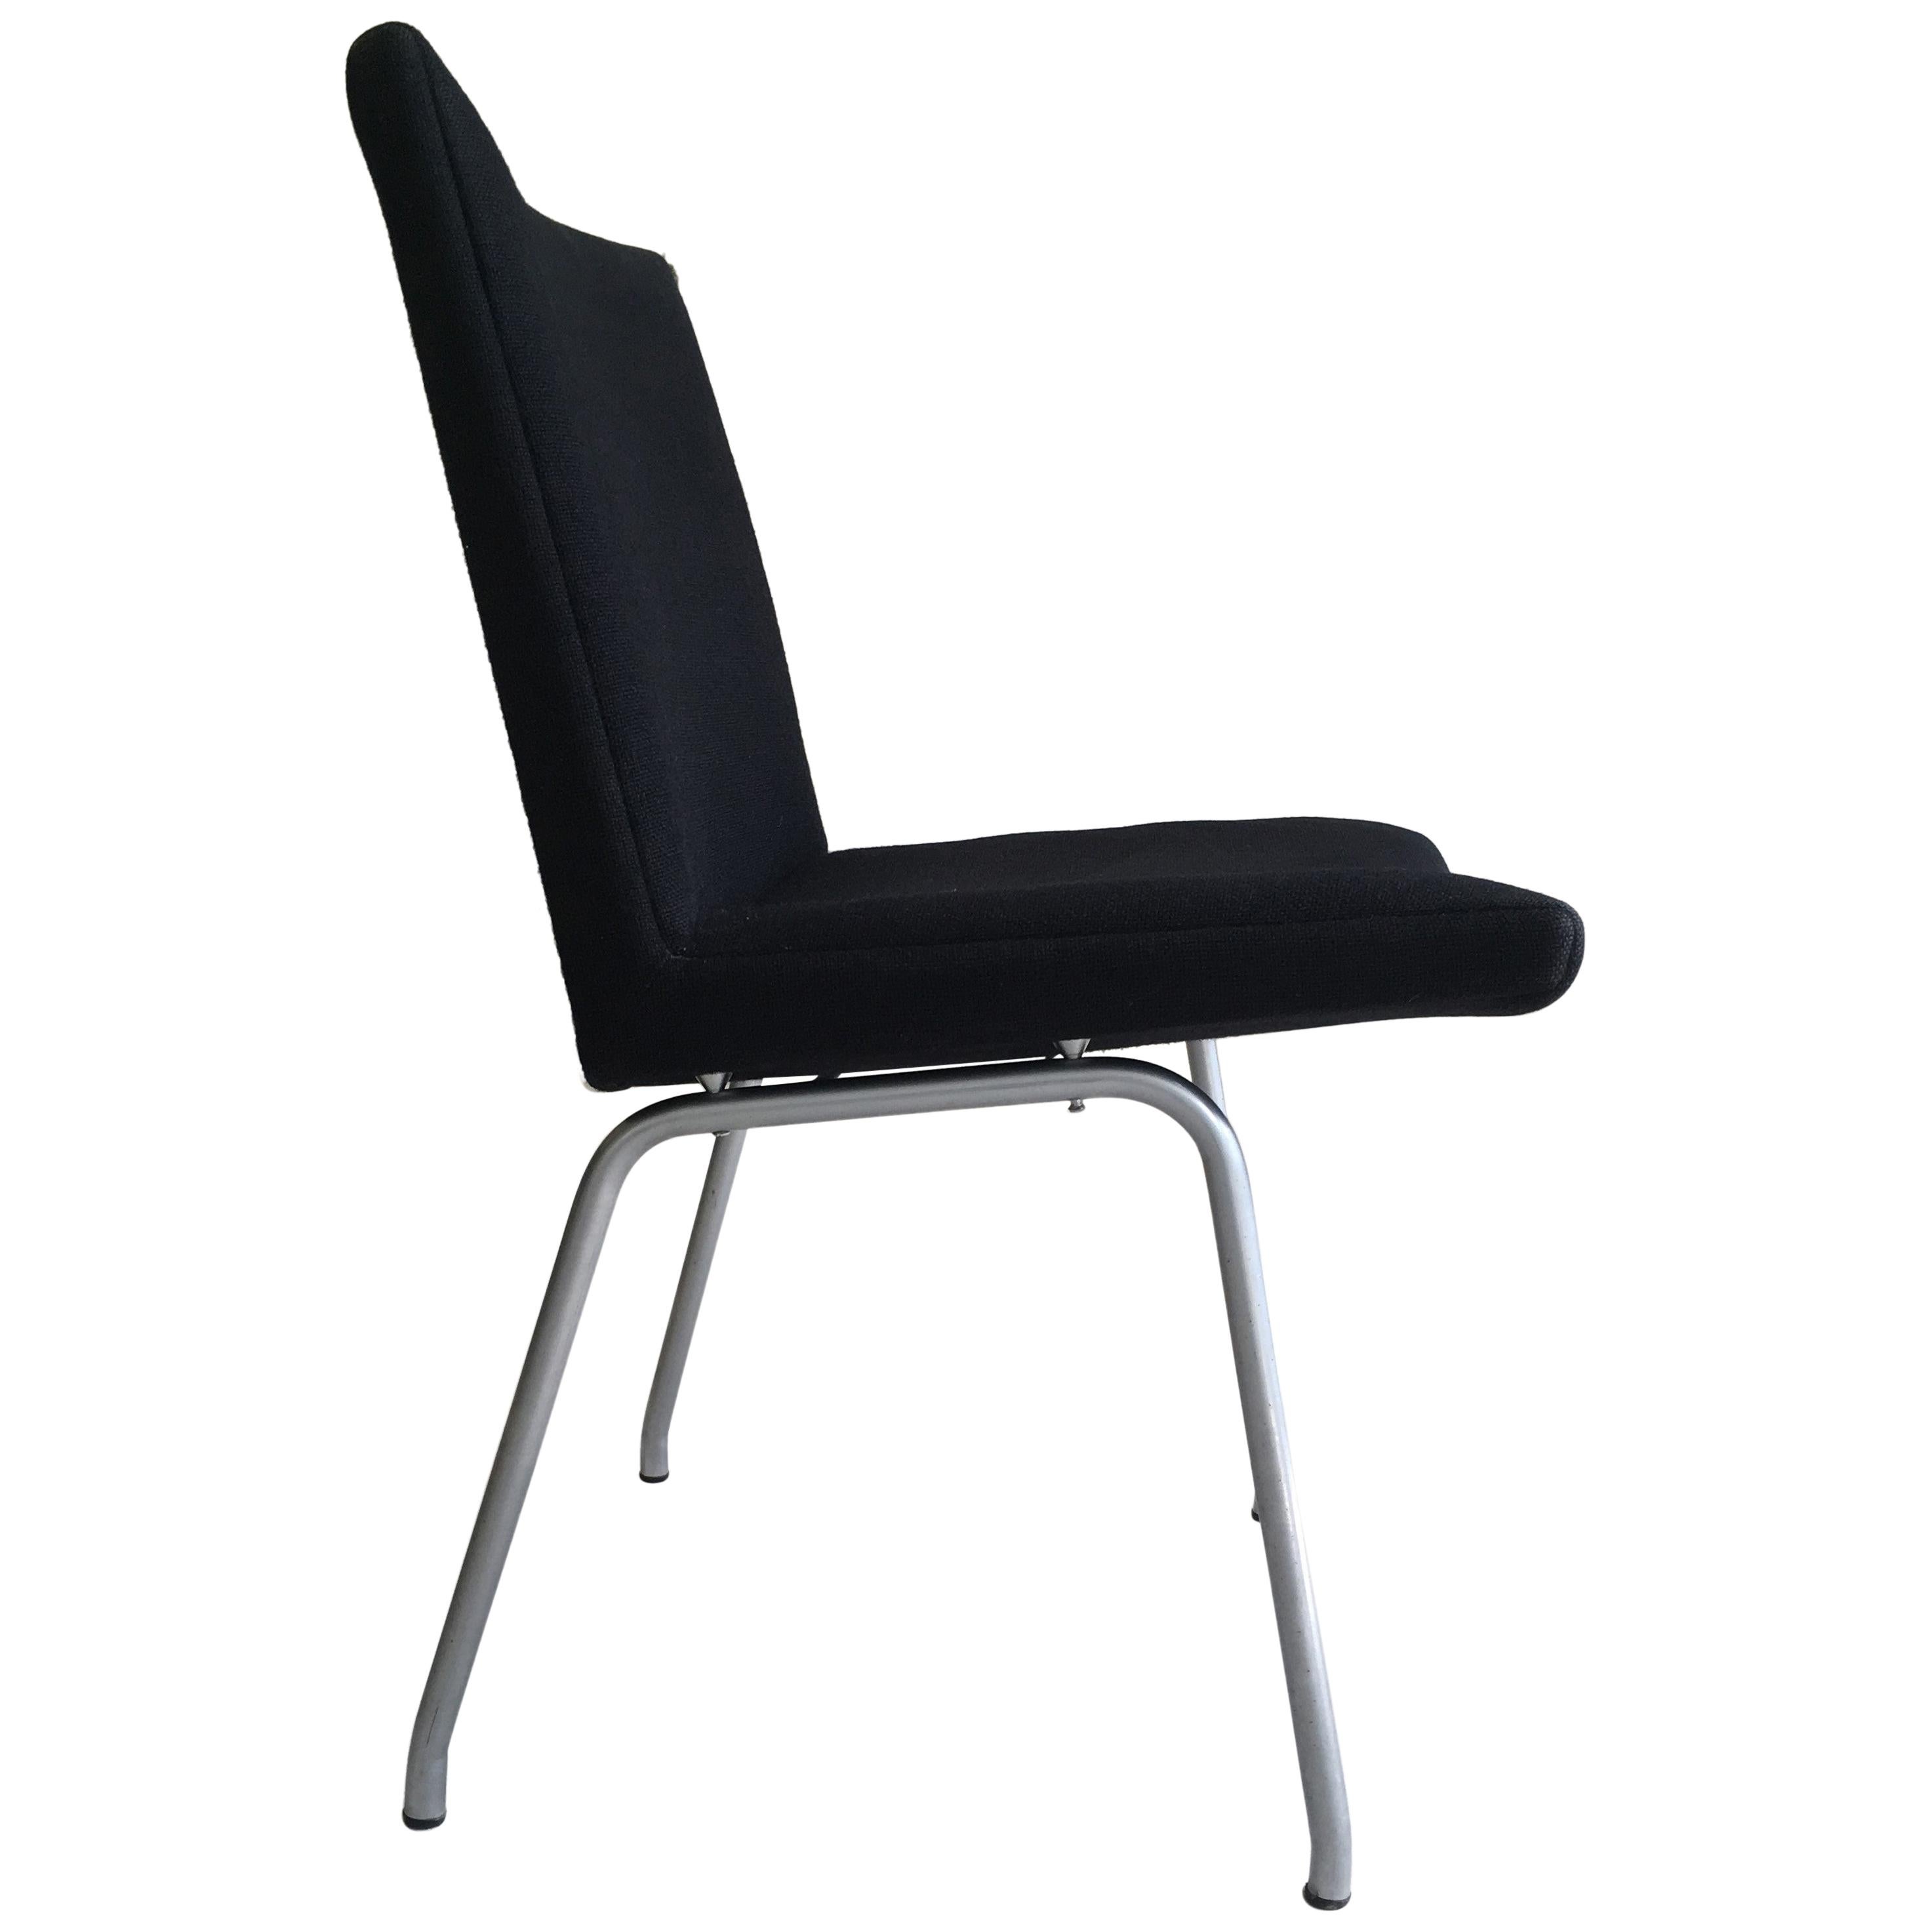 1960s Danish Hans J. Wegner Airport Chair Reupholstered in Black Fabric